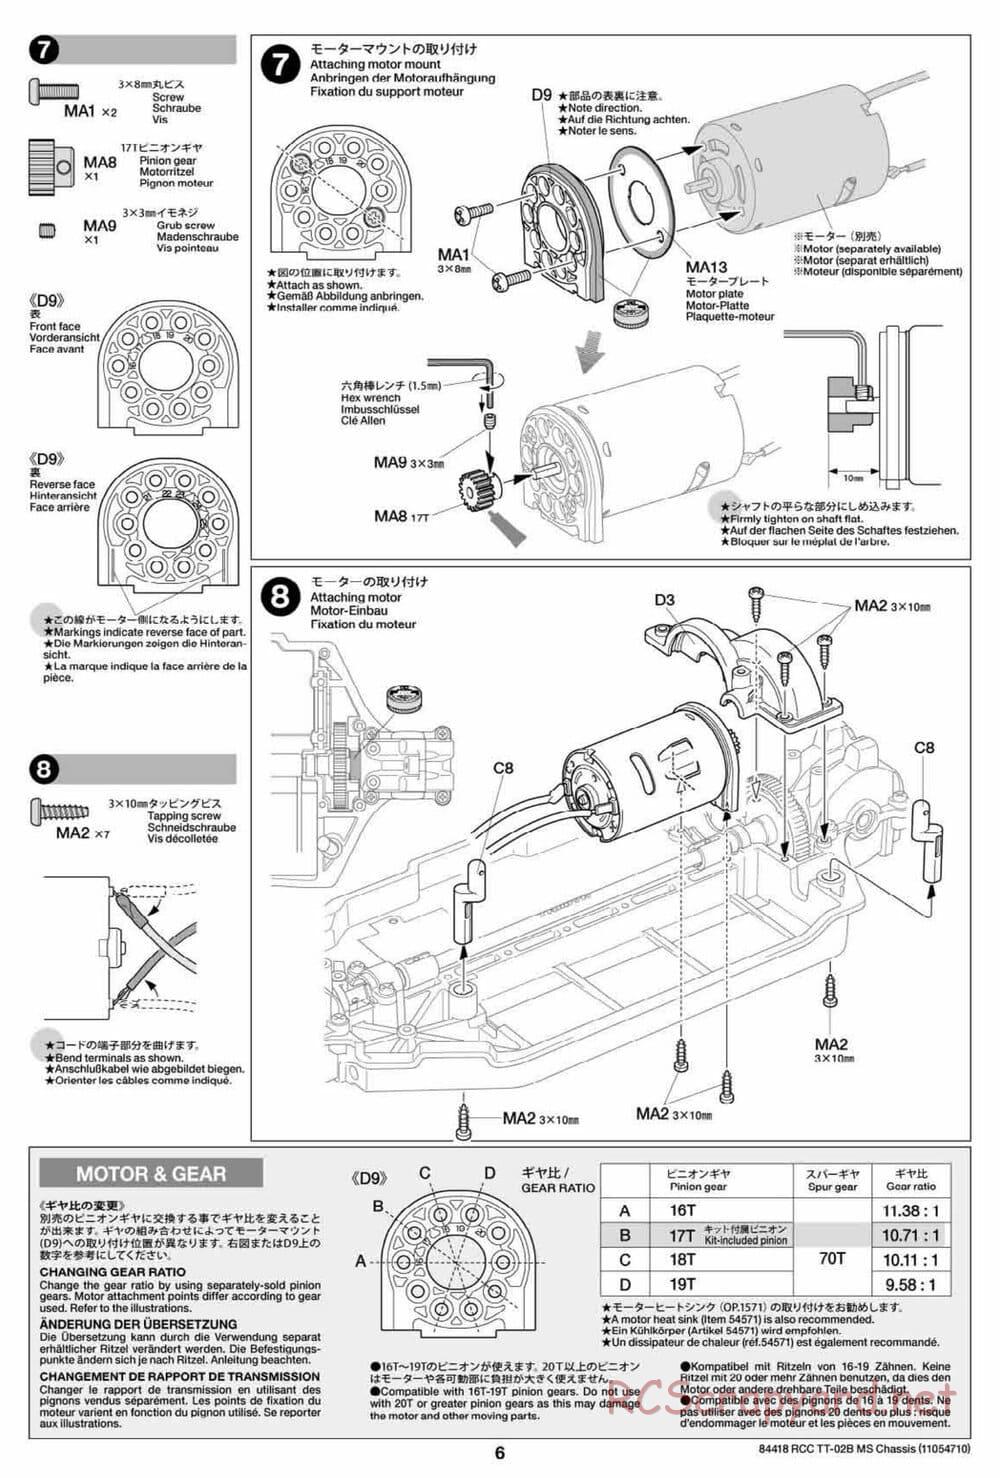 Tamiya - TT-02B MS Chassis - Manual - Page 6